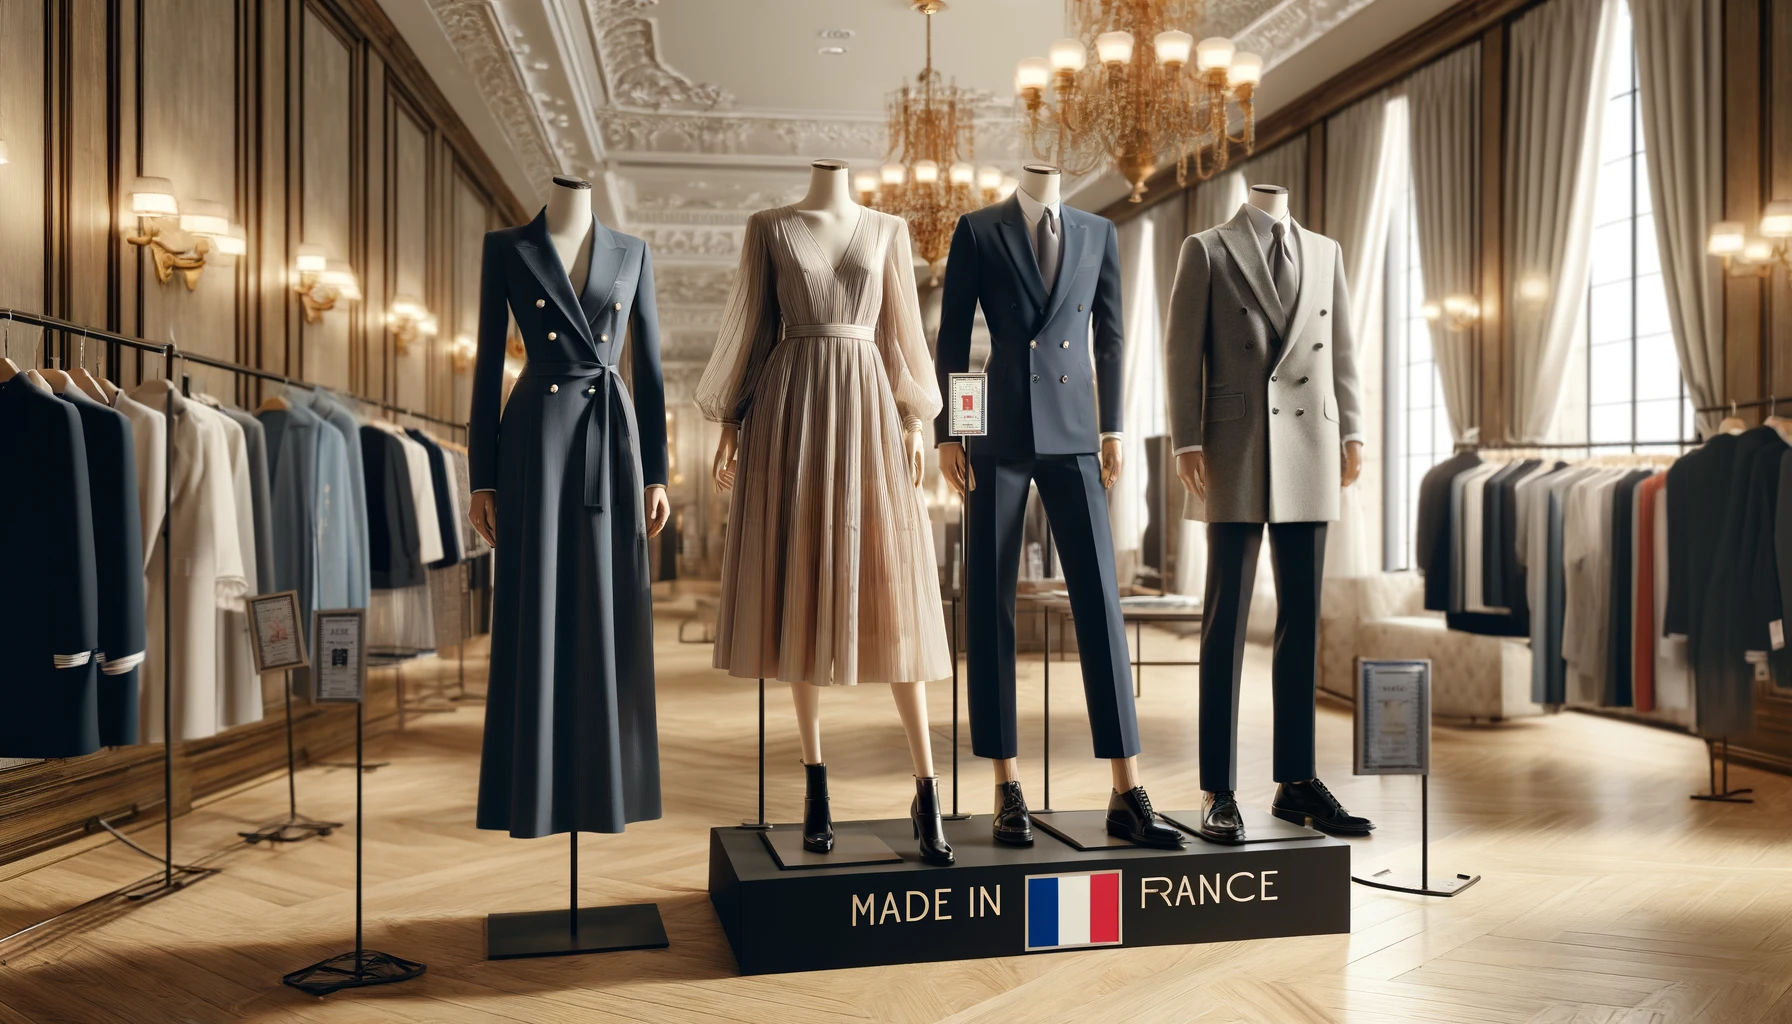 Comment reconnaître un vrai vêtement Made in France ?